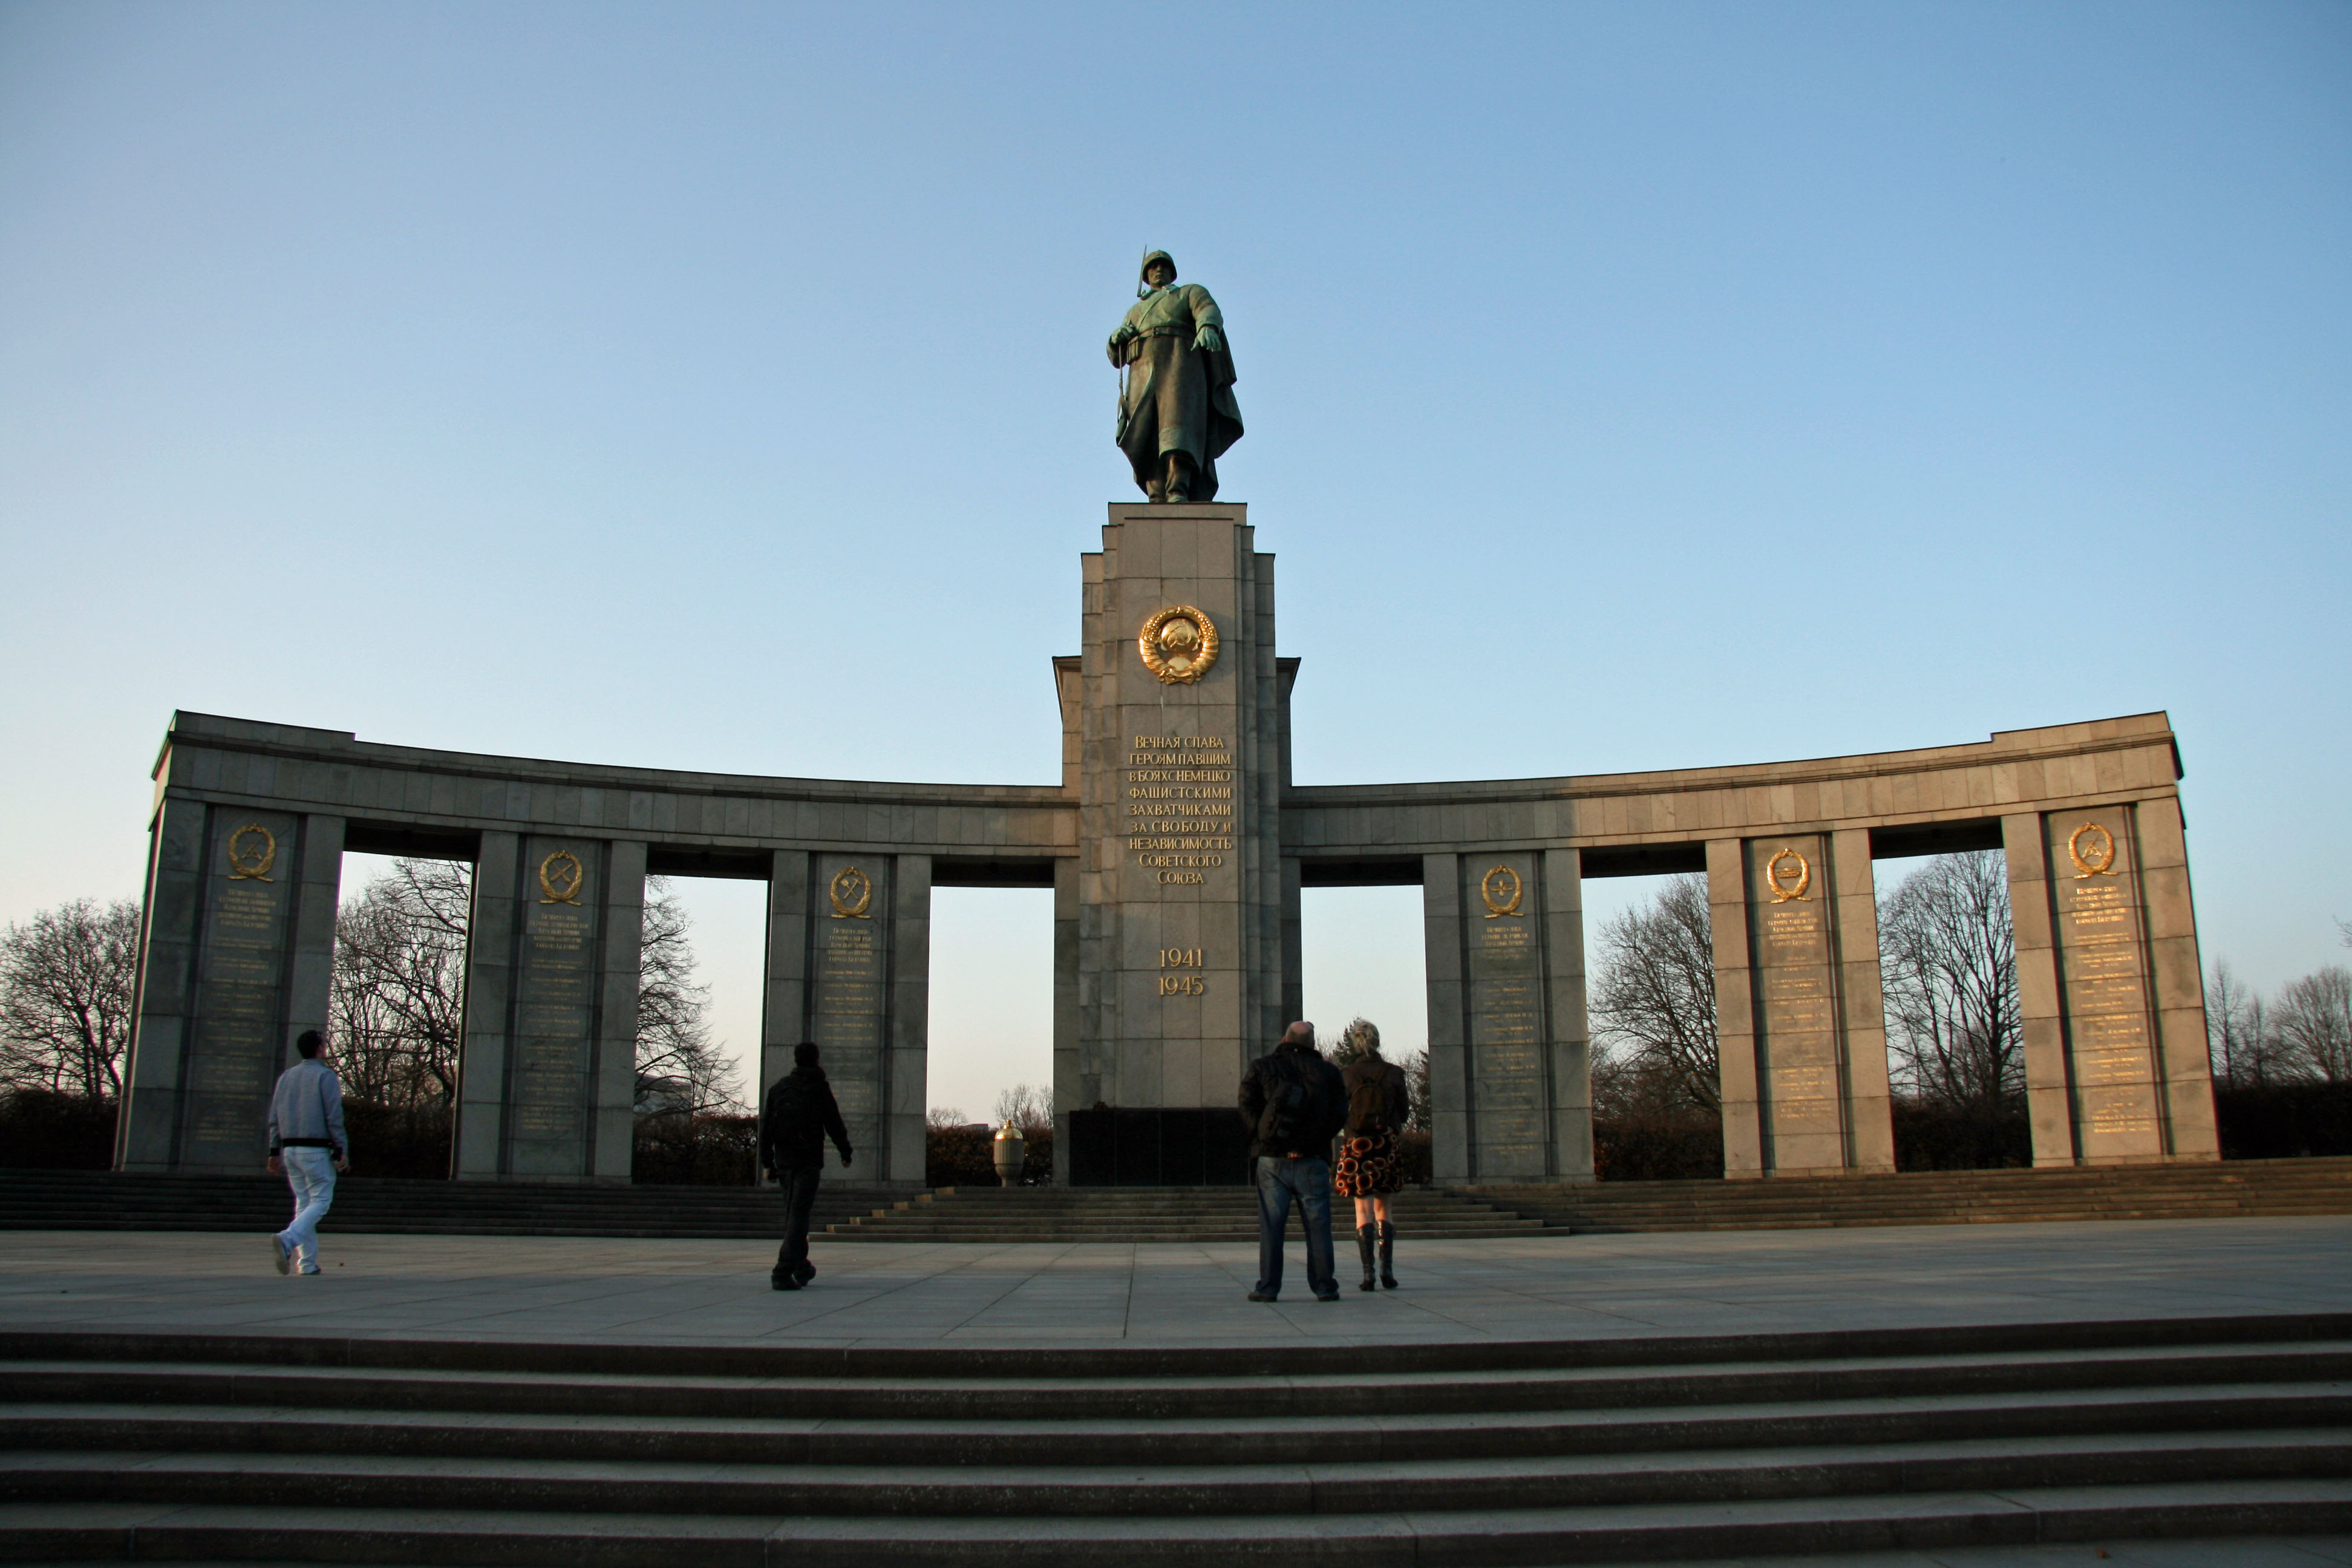 http://andberlin.com/wp-content/uploads/2012/06/soviet-war-memorial-front-view.jpg